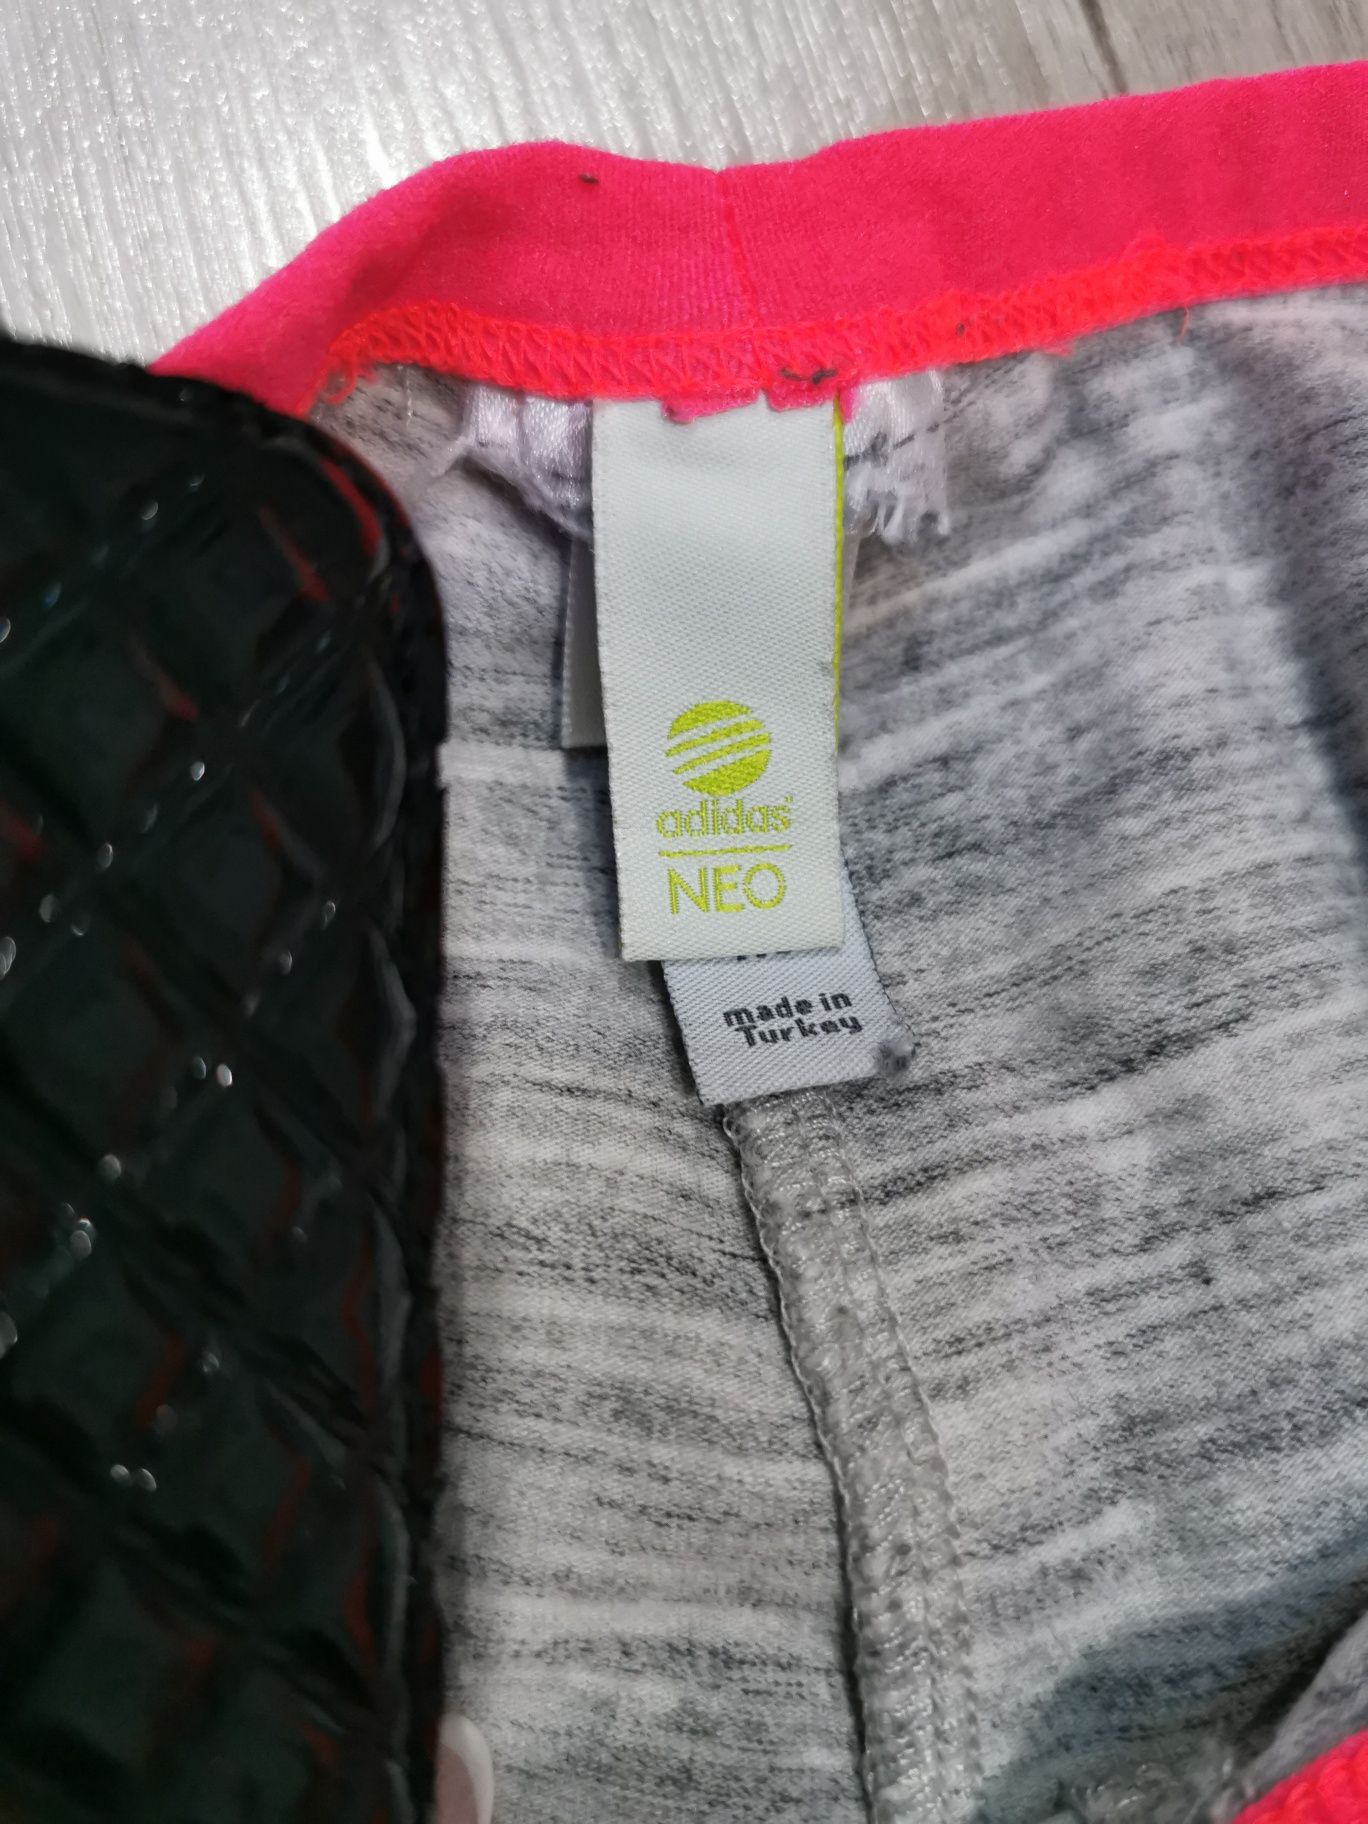 Legginsy Adidas Neo szare xs neon bawełna elastyczne melanż